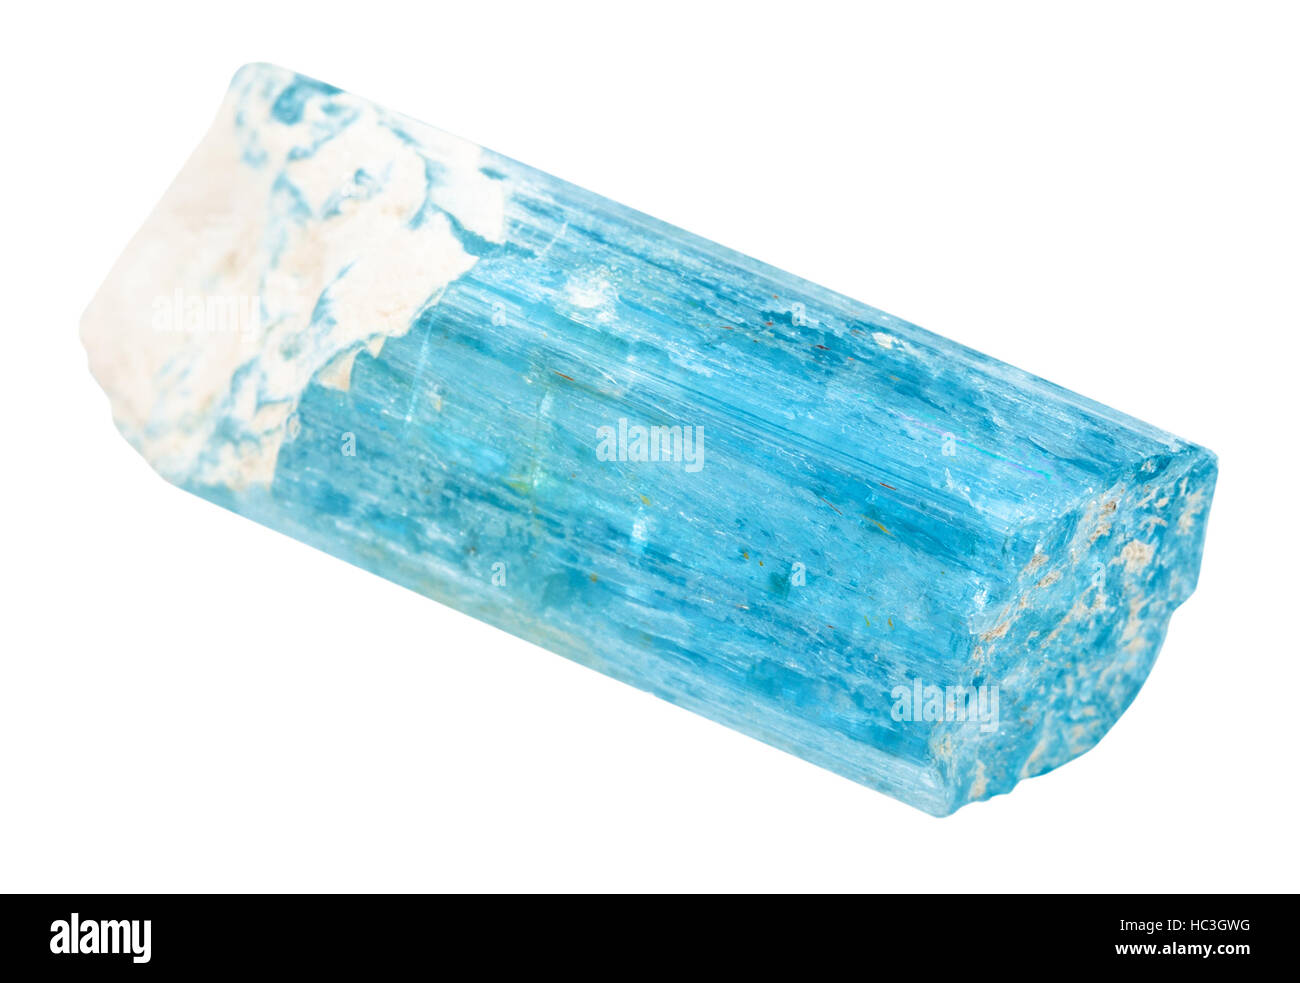 La prise de vue macro de spécimen de minéral naturel - aigue-marine (béryl bleu) stone isolé sur fond blanc Banque D'Images